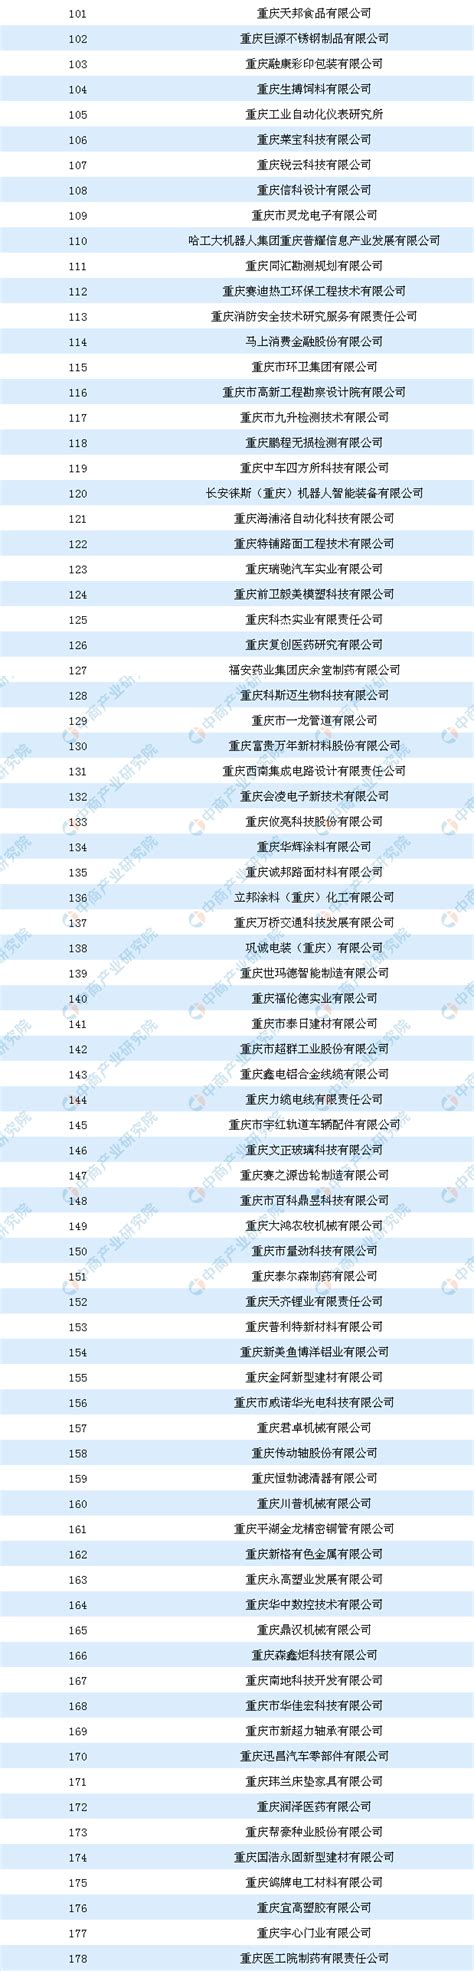 2019年重庆市企业技术中心拟认定名单公布：共178家企业上榜-中商情报网